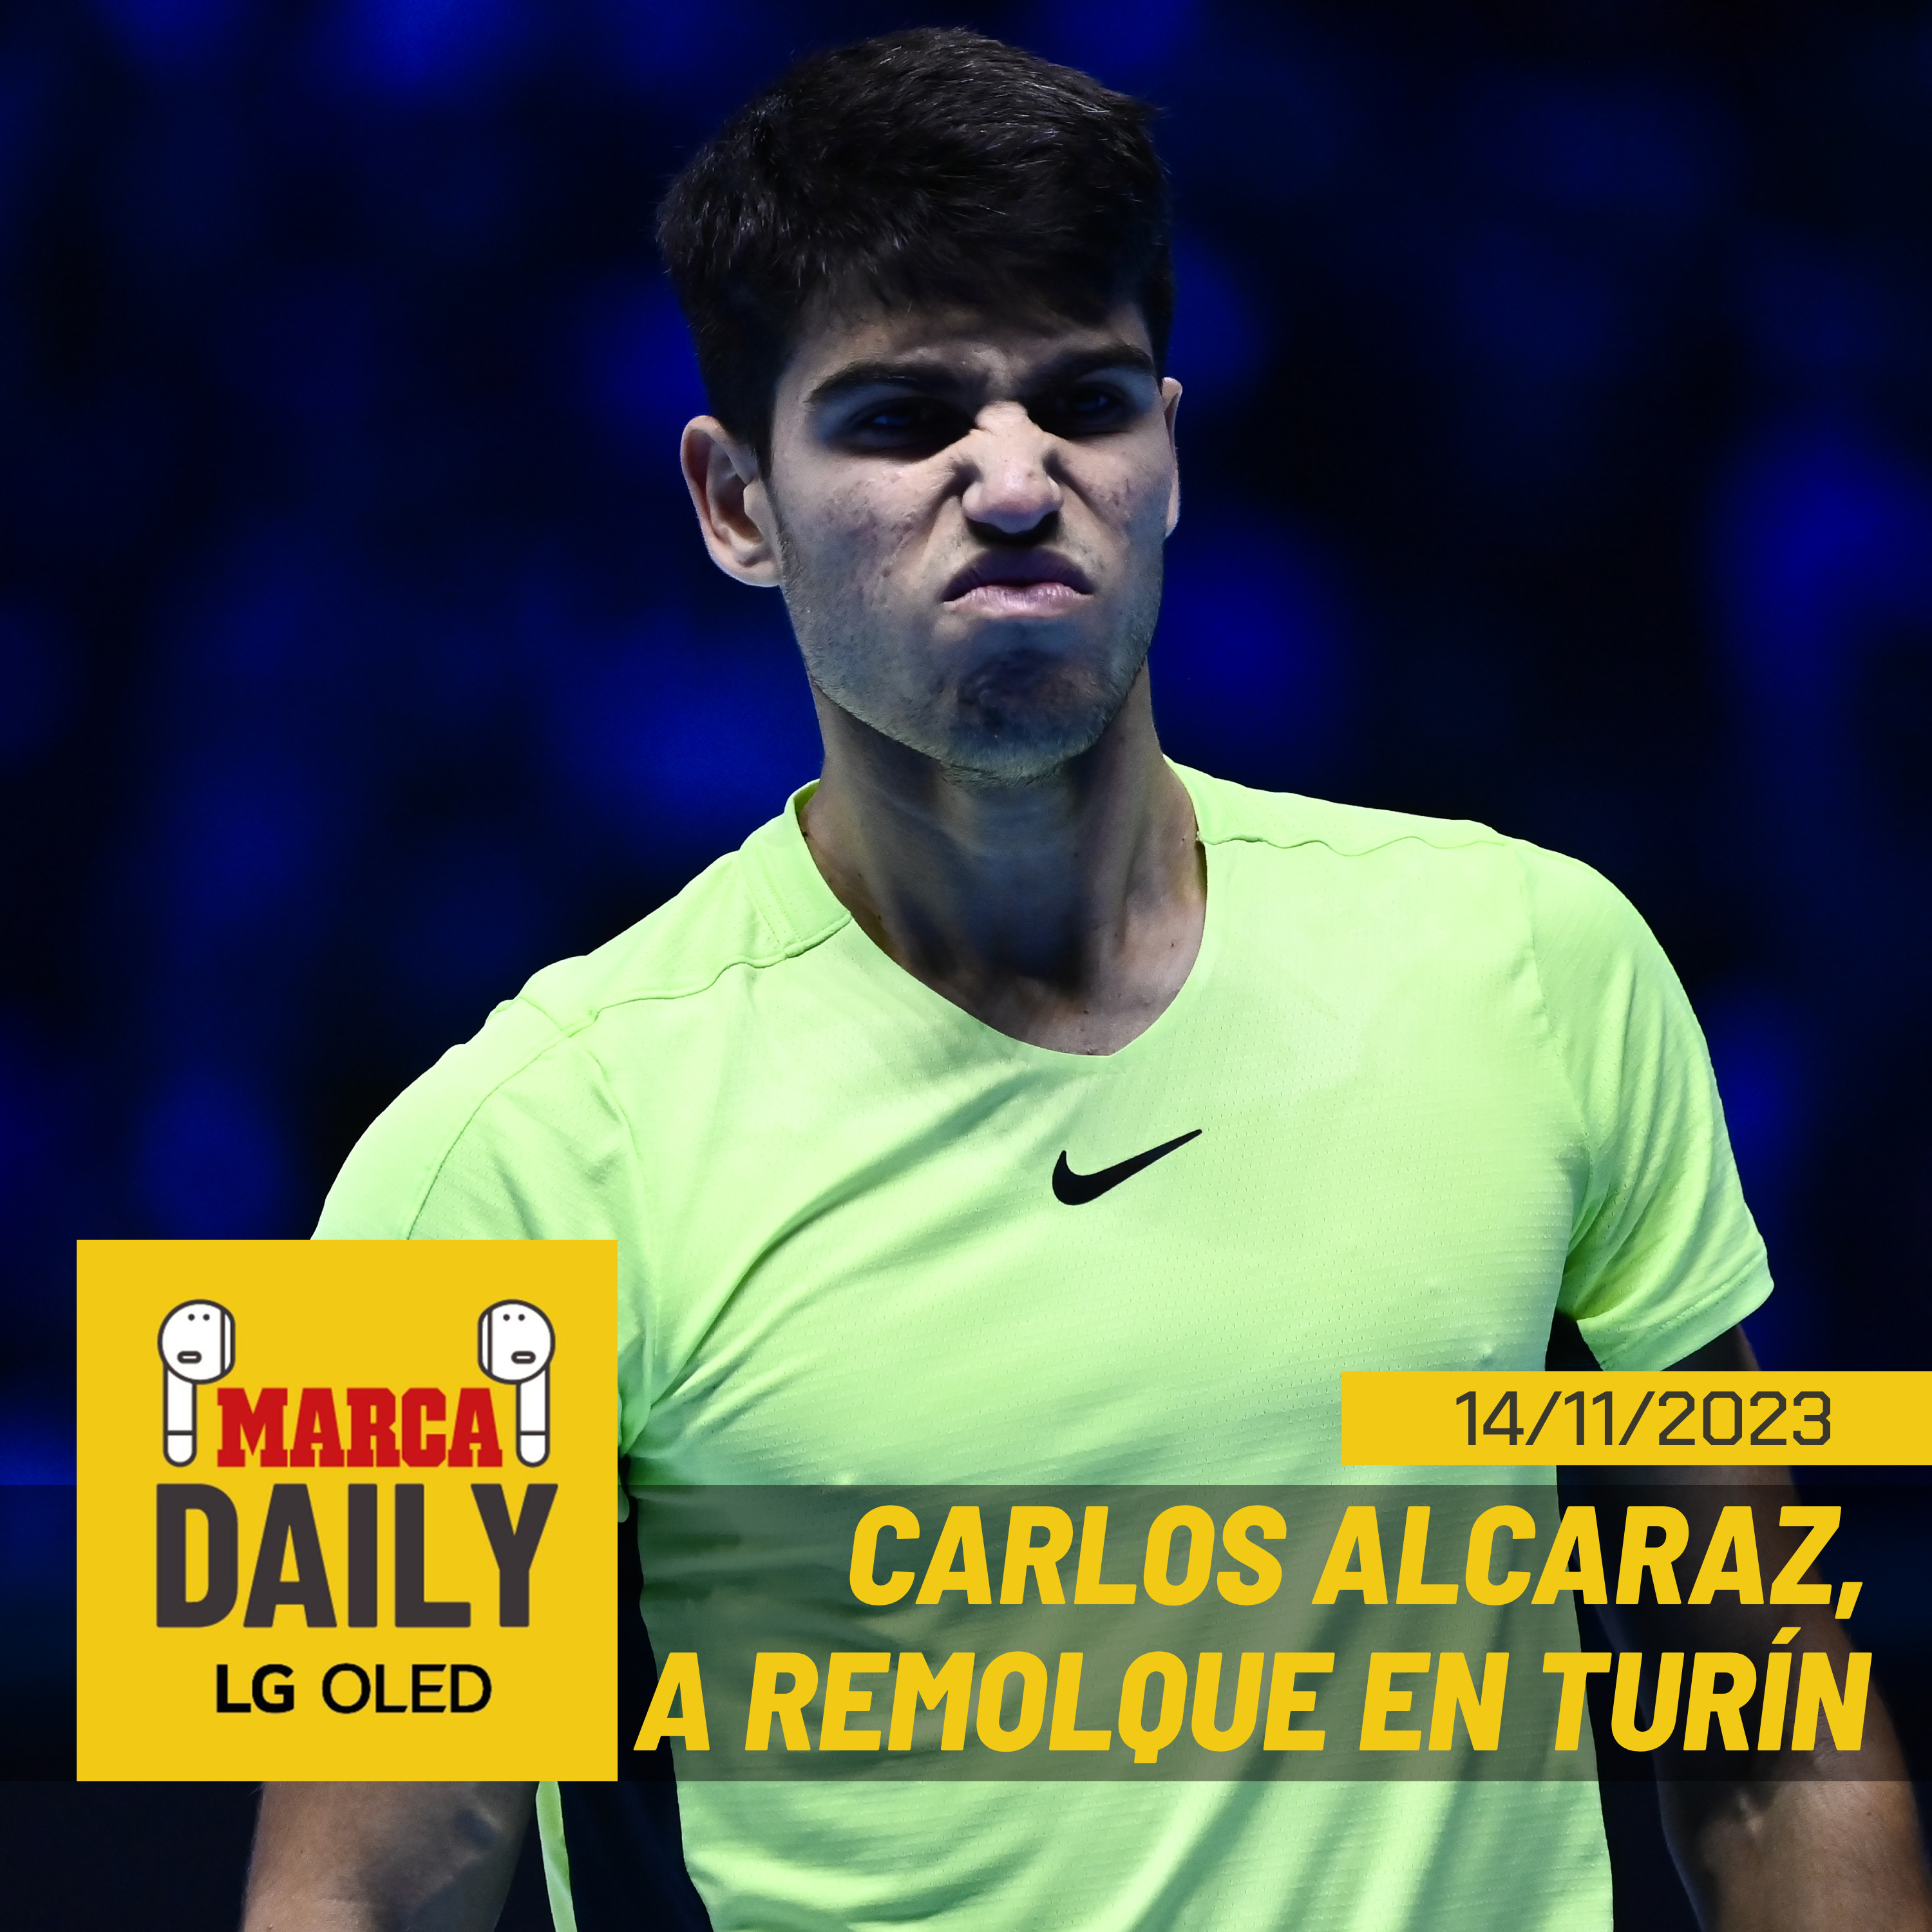 Alcaraz empieza con mal pie en las ATP Finals